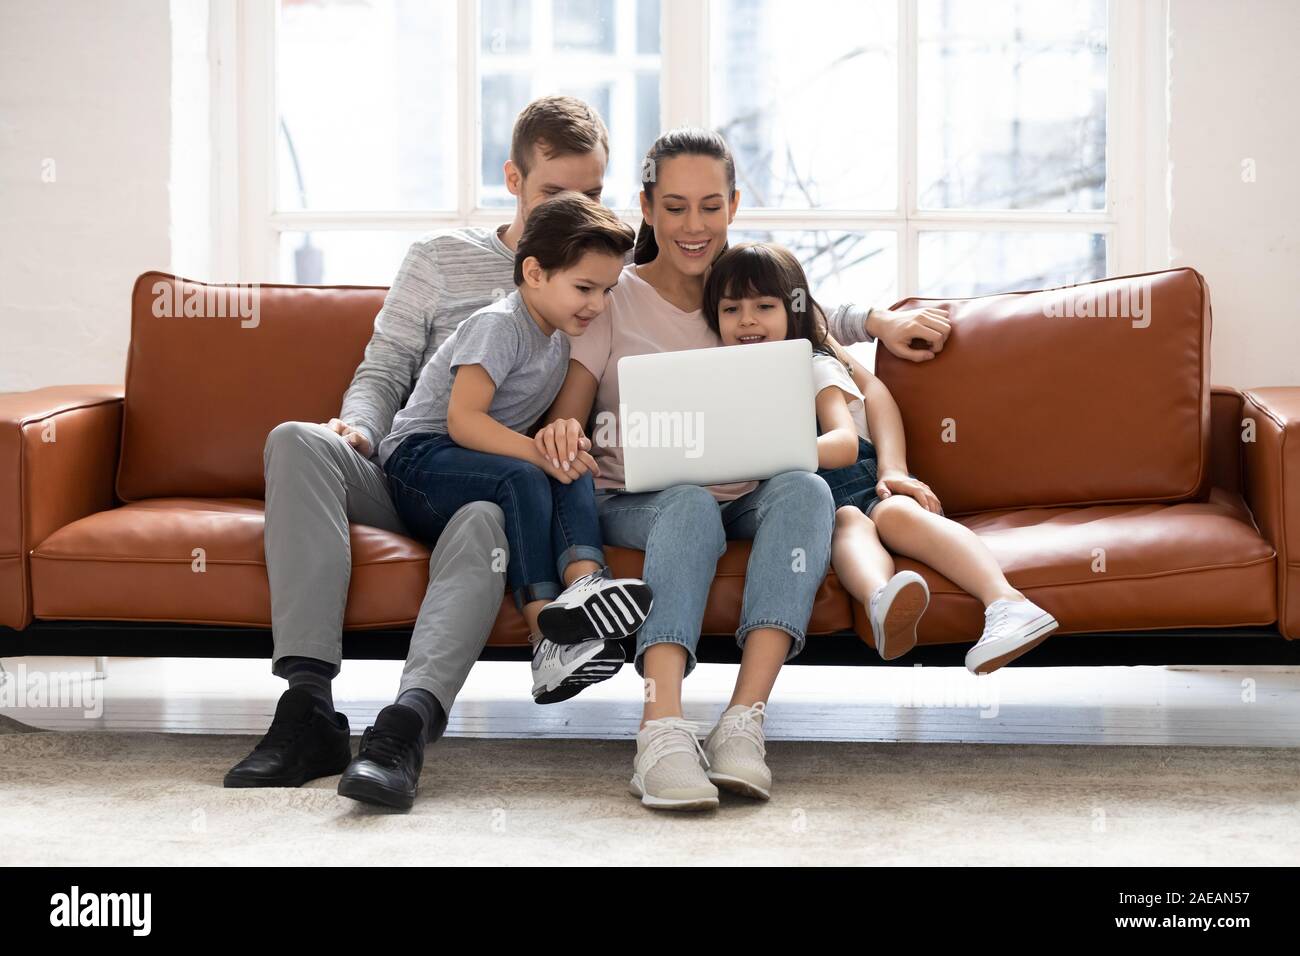 Famille heureuse avec deux enfants ayant un bon moment à l'aide de l'ordinateur portable. Banque D'Images